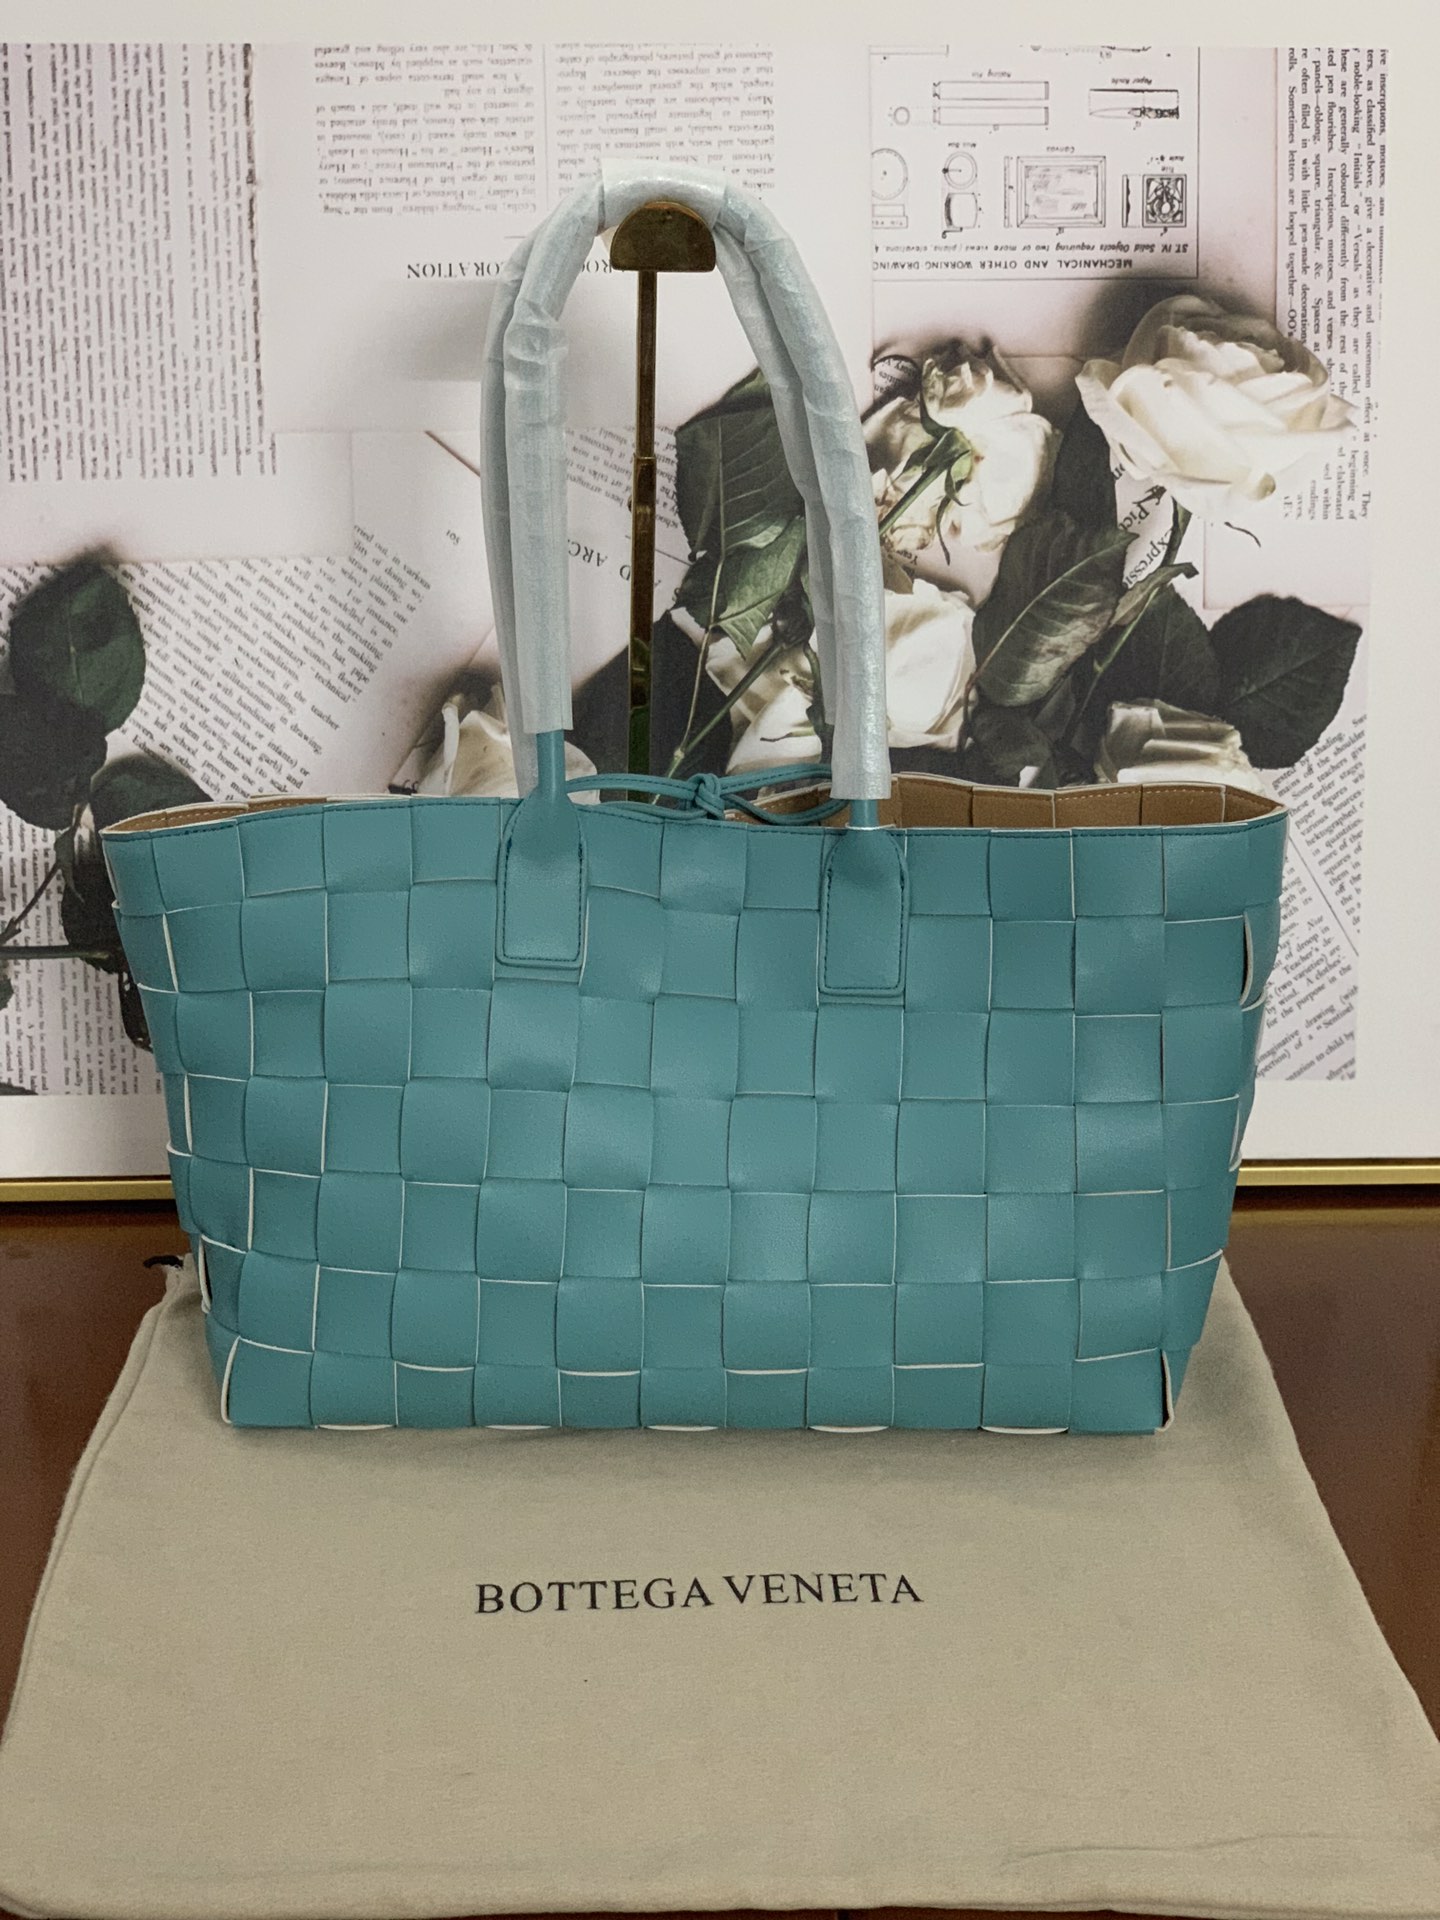 Bottega Veneta 보테가 베네타 인트레치아토 토트백